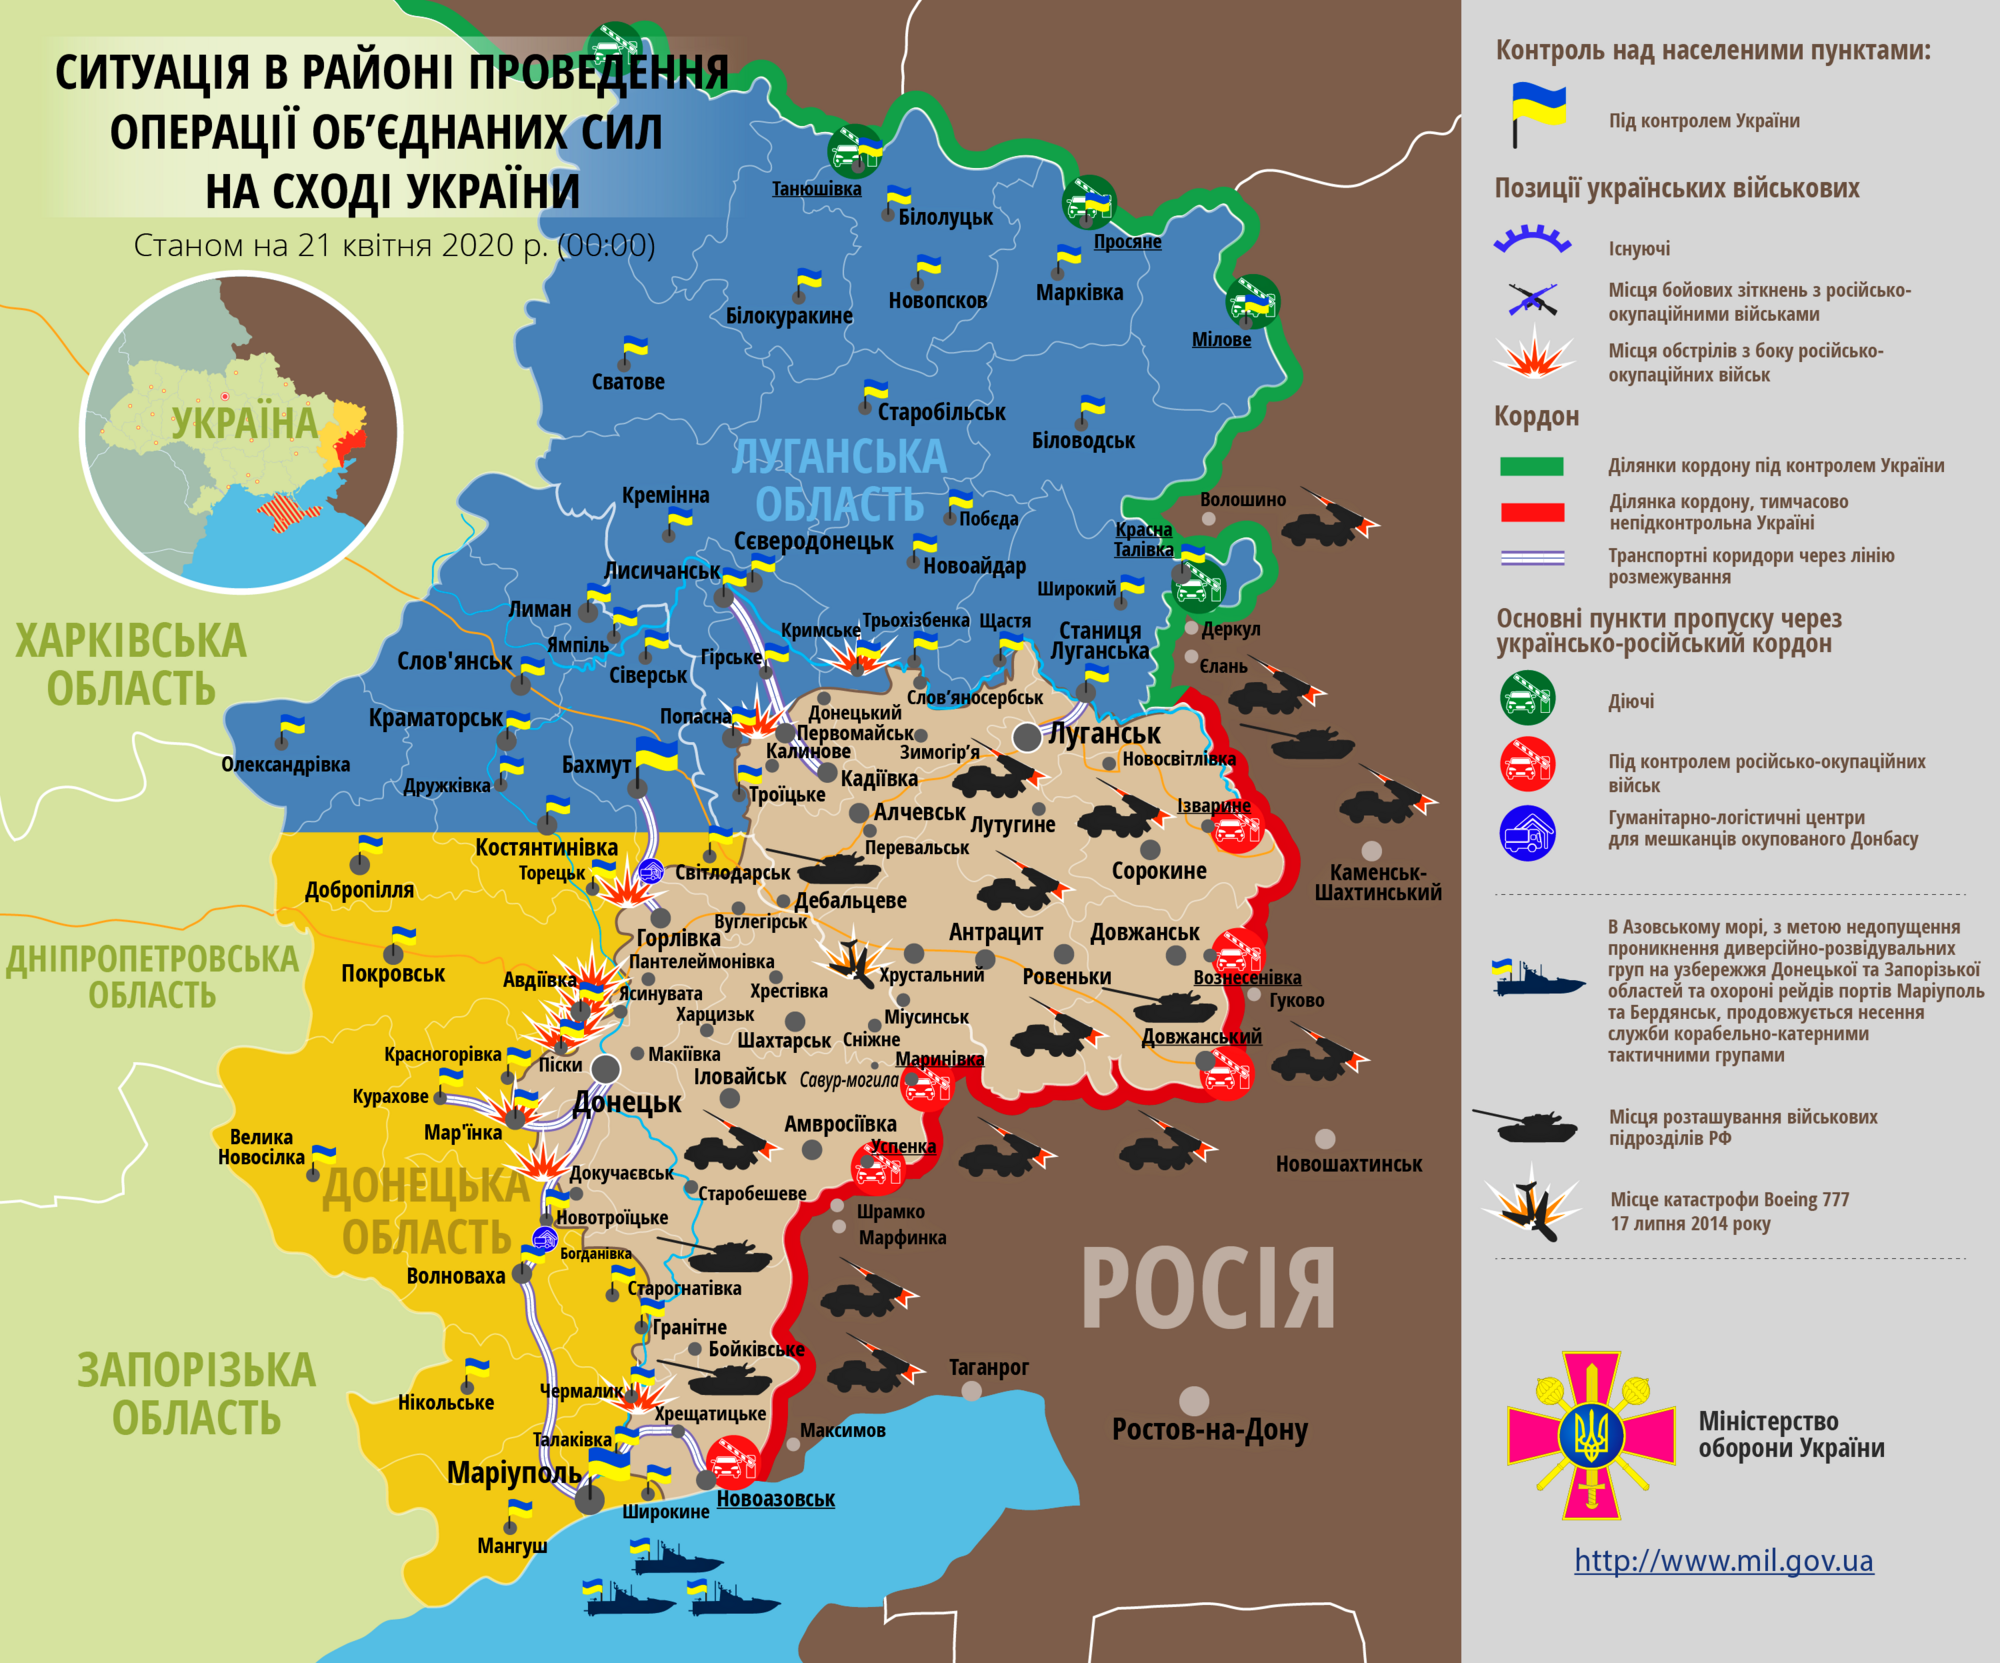 Ситуация в зоне проведения ООС на Донбассе 21 апреля